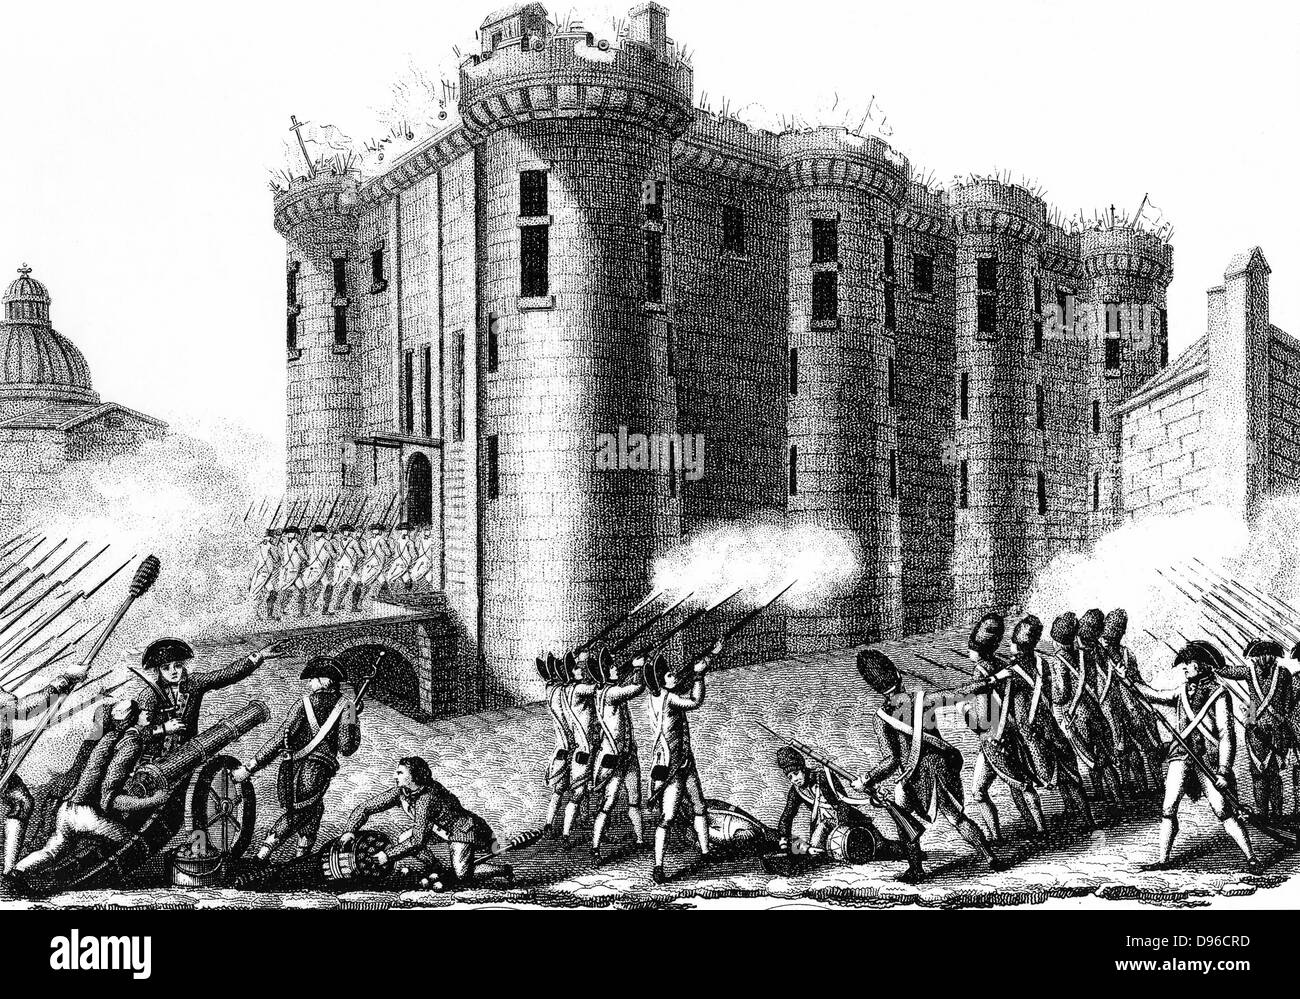 Sturm auf die Bastille von Parisern unter der Leitung von Grenadier Guards 14. Juli 1789. Gravur von 1804 Stockfoto